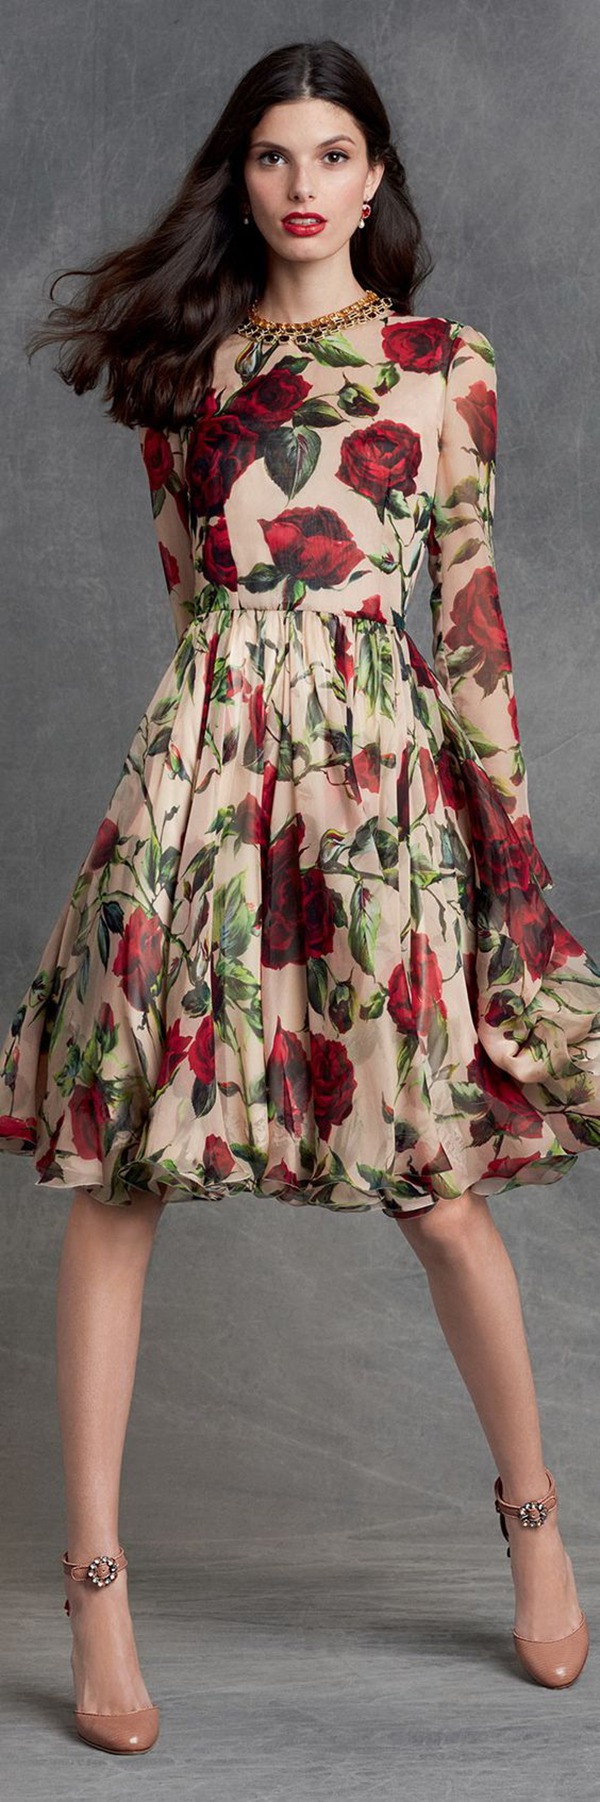 Цветочные принты на летних и вечерних платьях: просто, женственно, эффектно, фото № 33